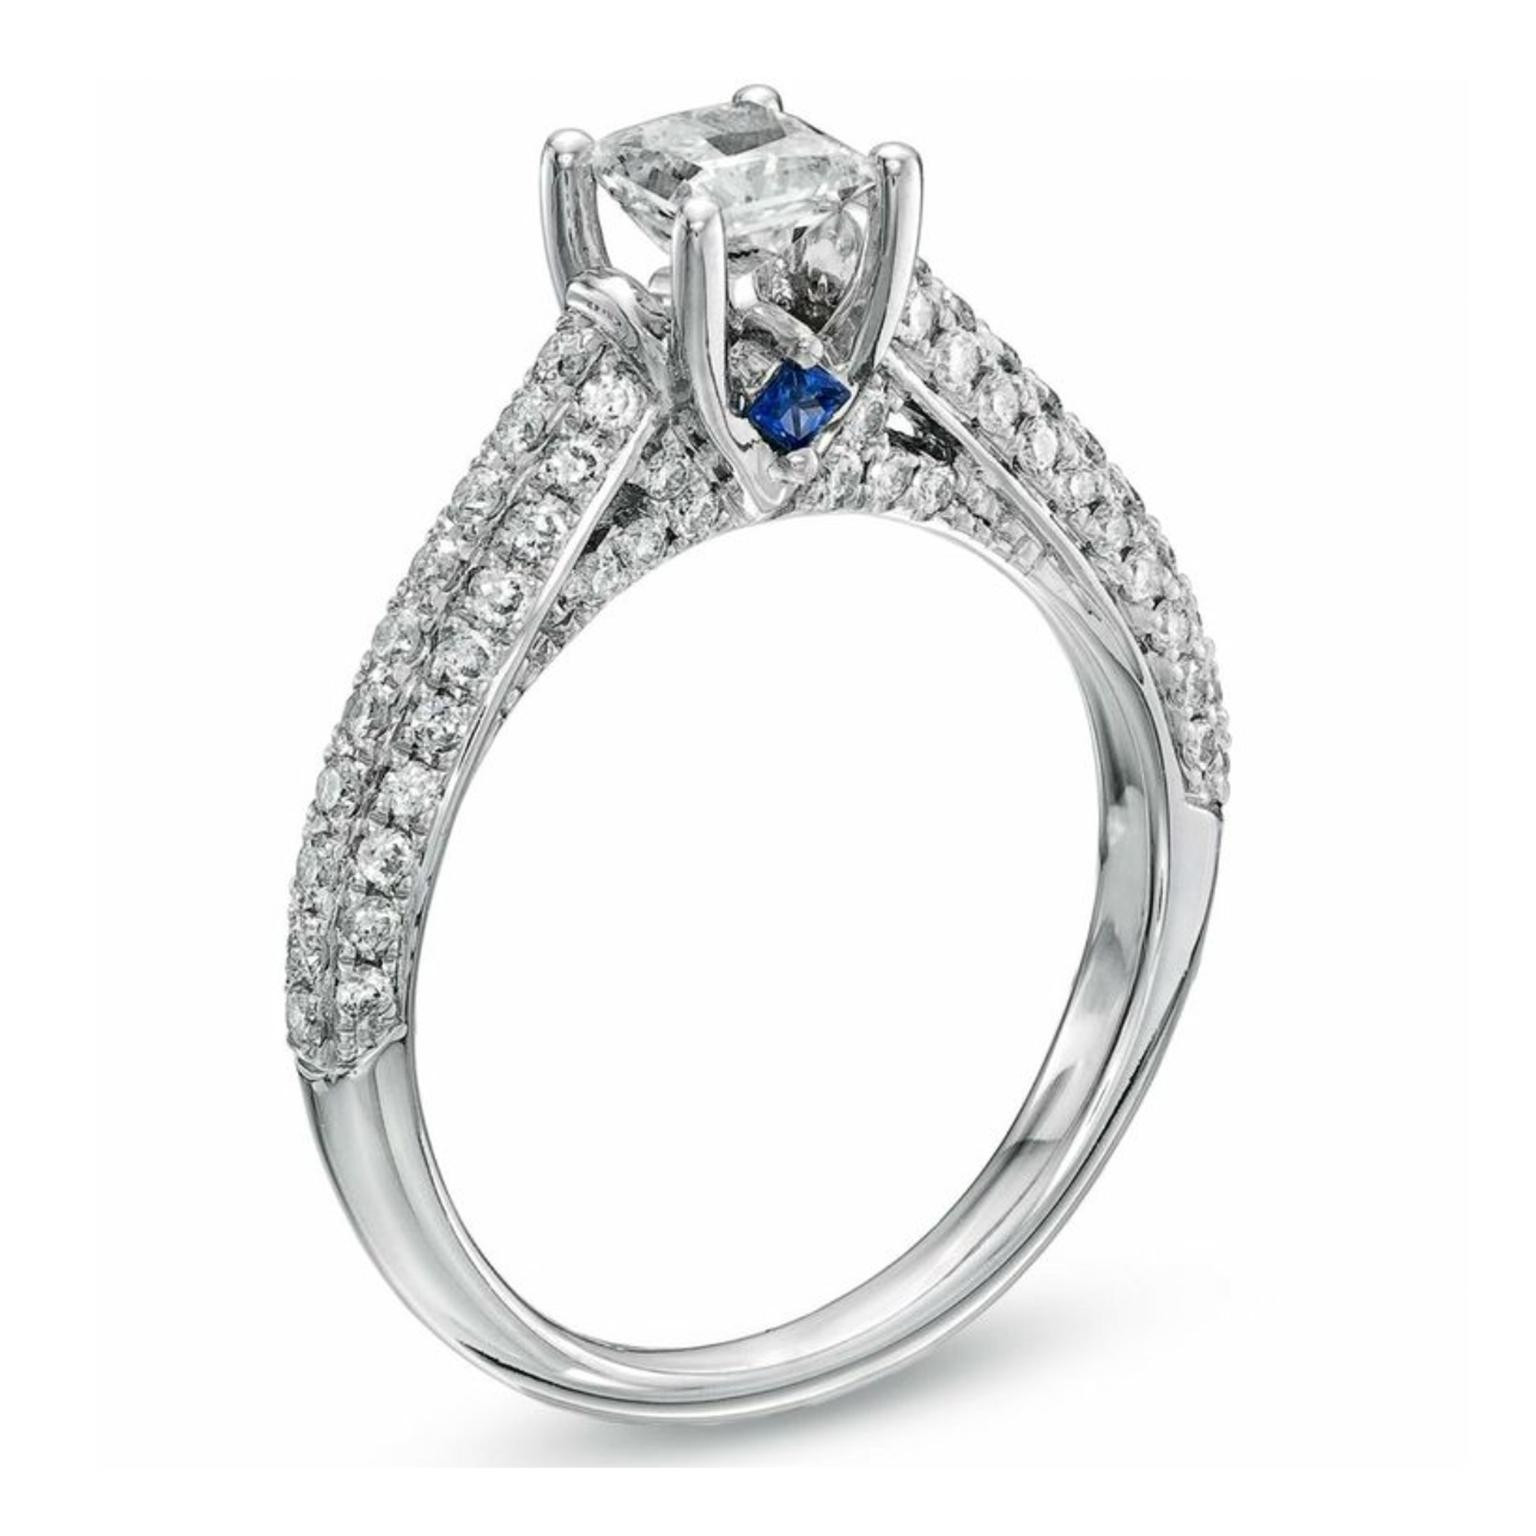 Vera Wang Princess Cut Engagement Rings
 LOVE princess cut diamond engagement ring